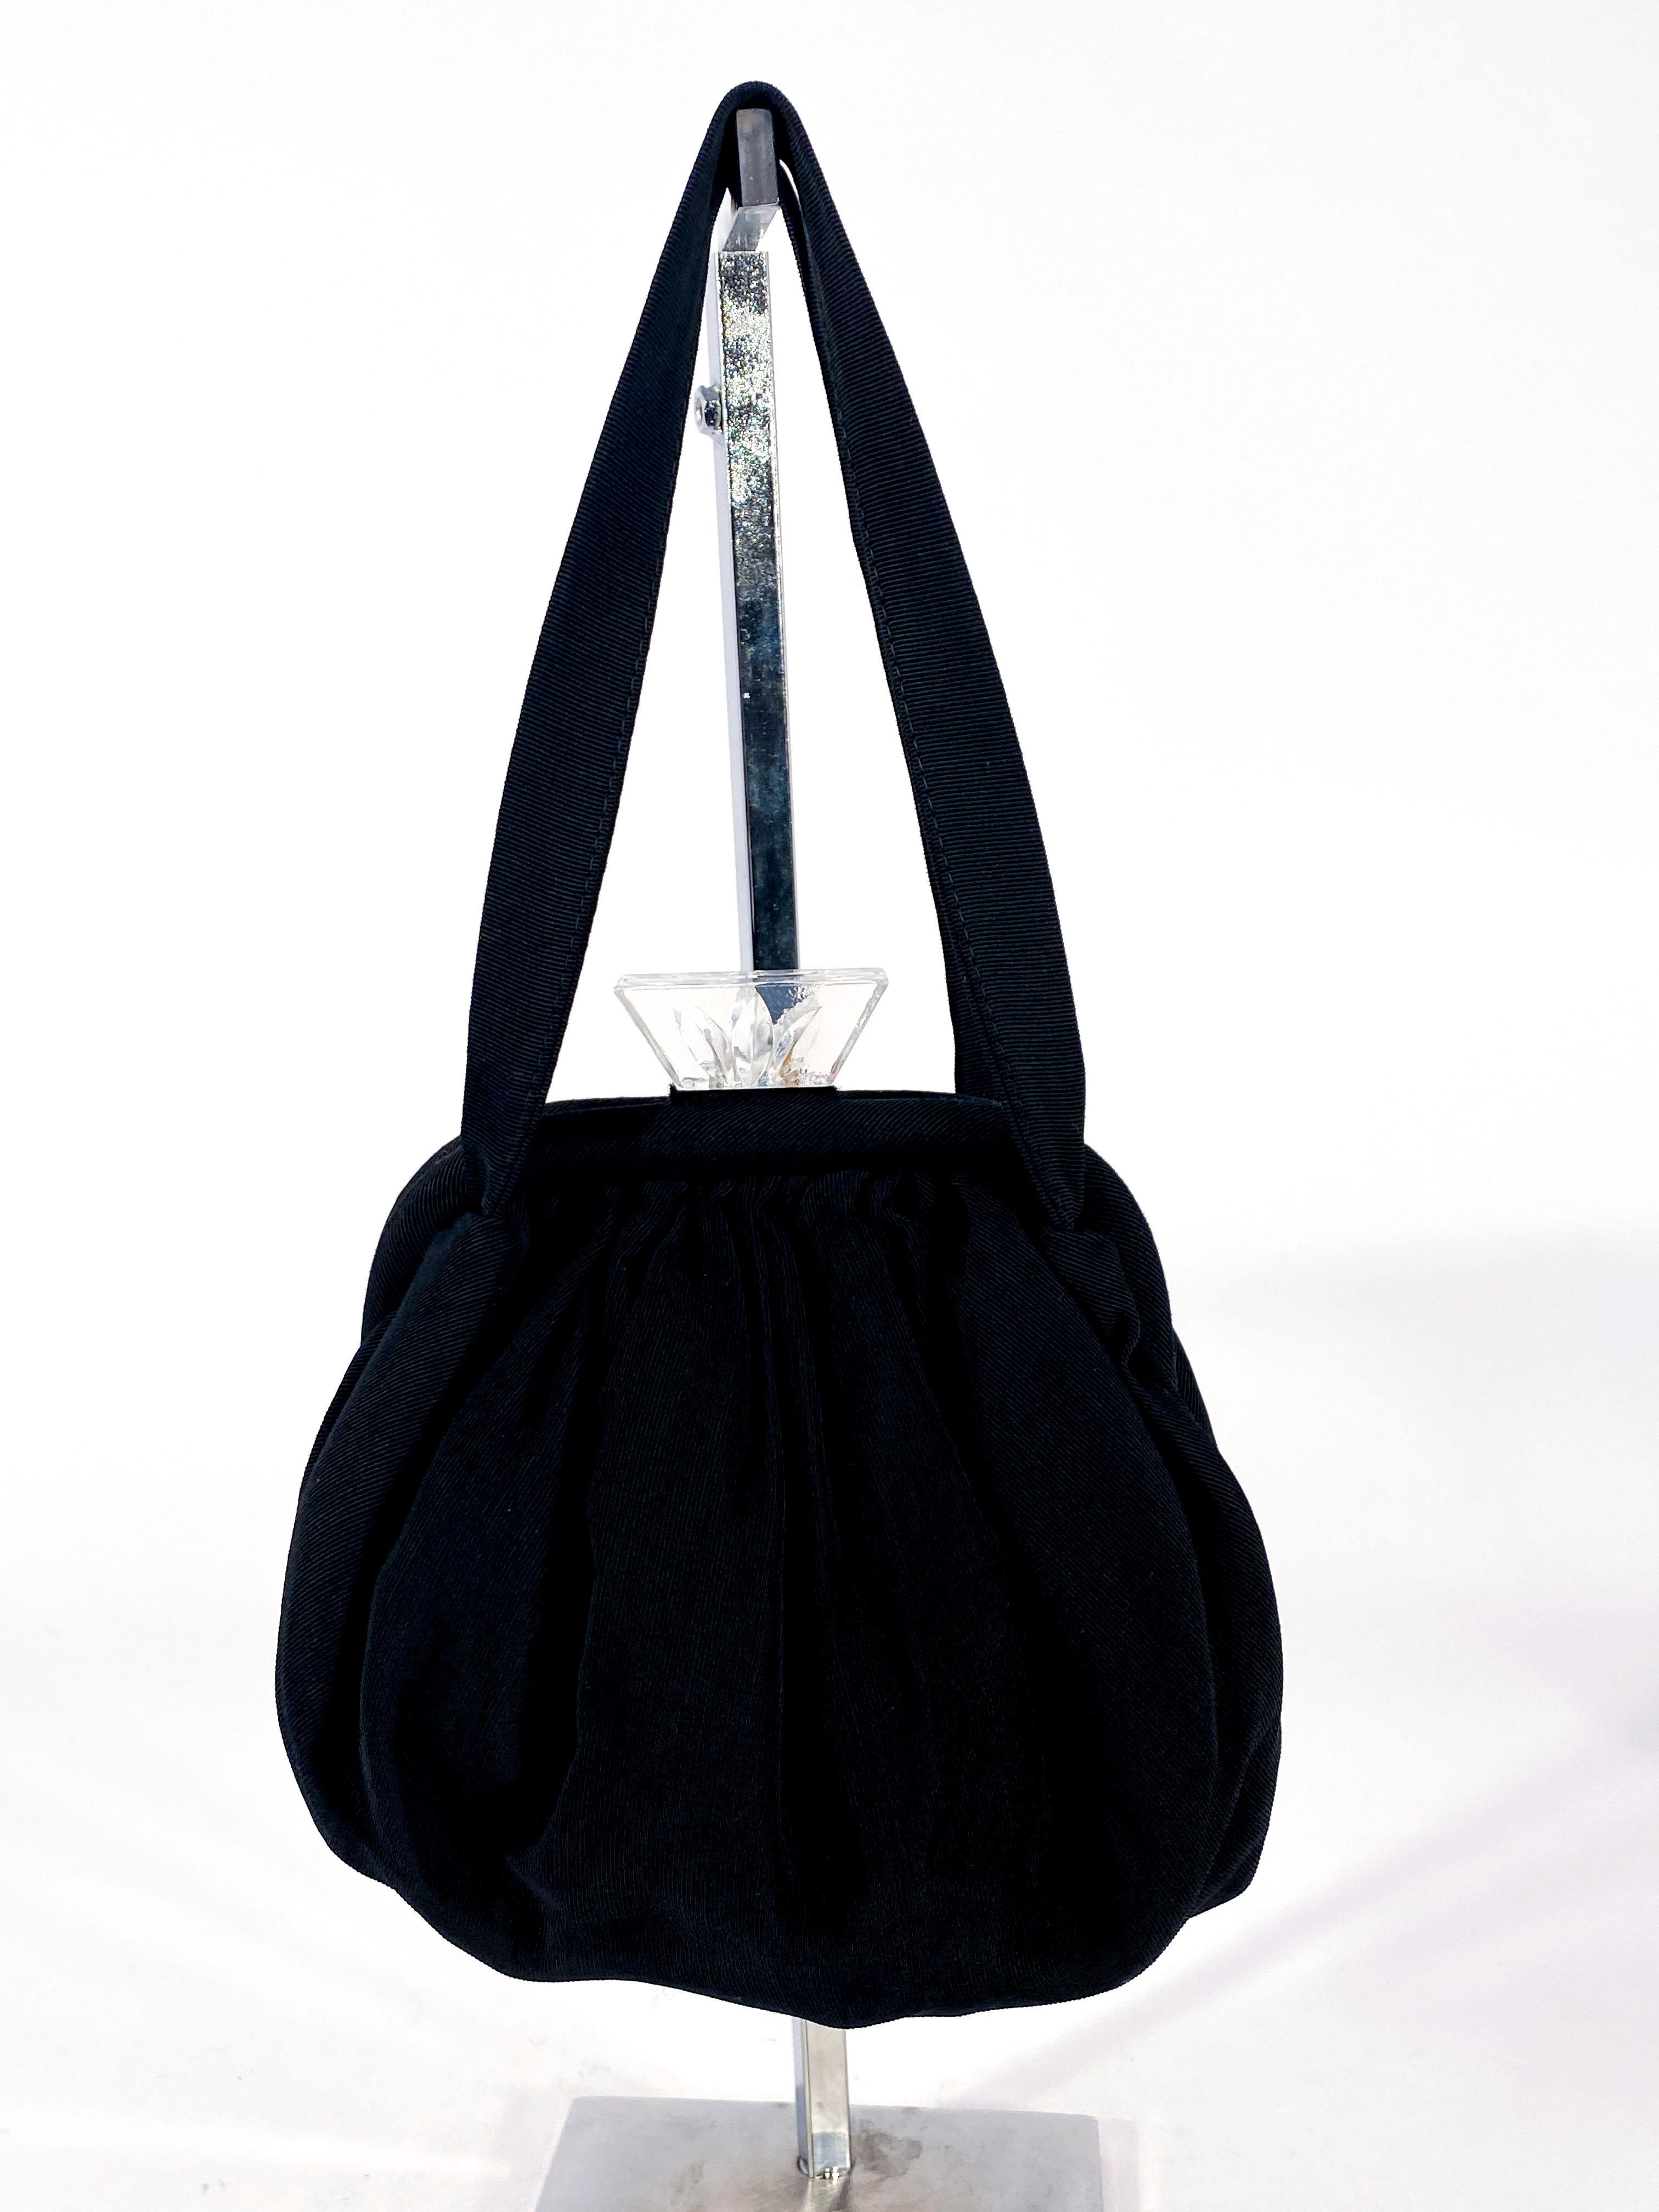 sac à main en sergé noir des années 1930 avec fermeture et tirette en lucite sculptée Art Déco. Le corps du sac est doublé en sergé noir et comporte un porte-monnaie intégré. L'ensemble du sac est doté d'une double poignée.